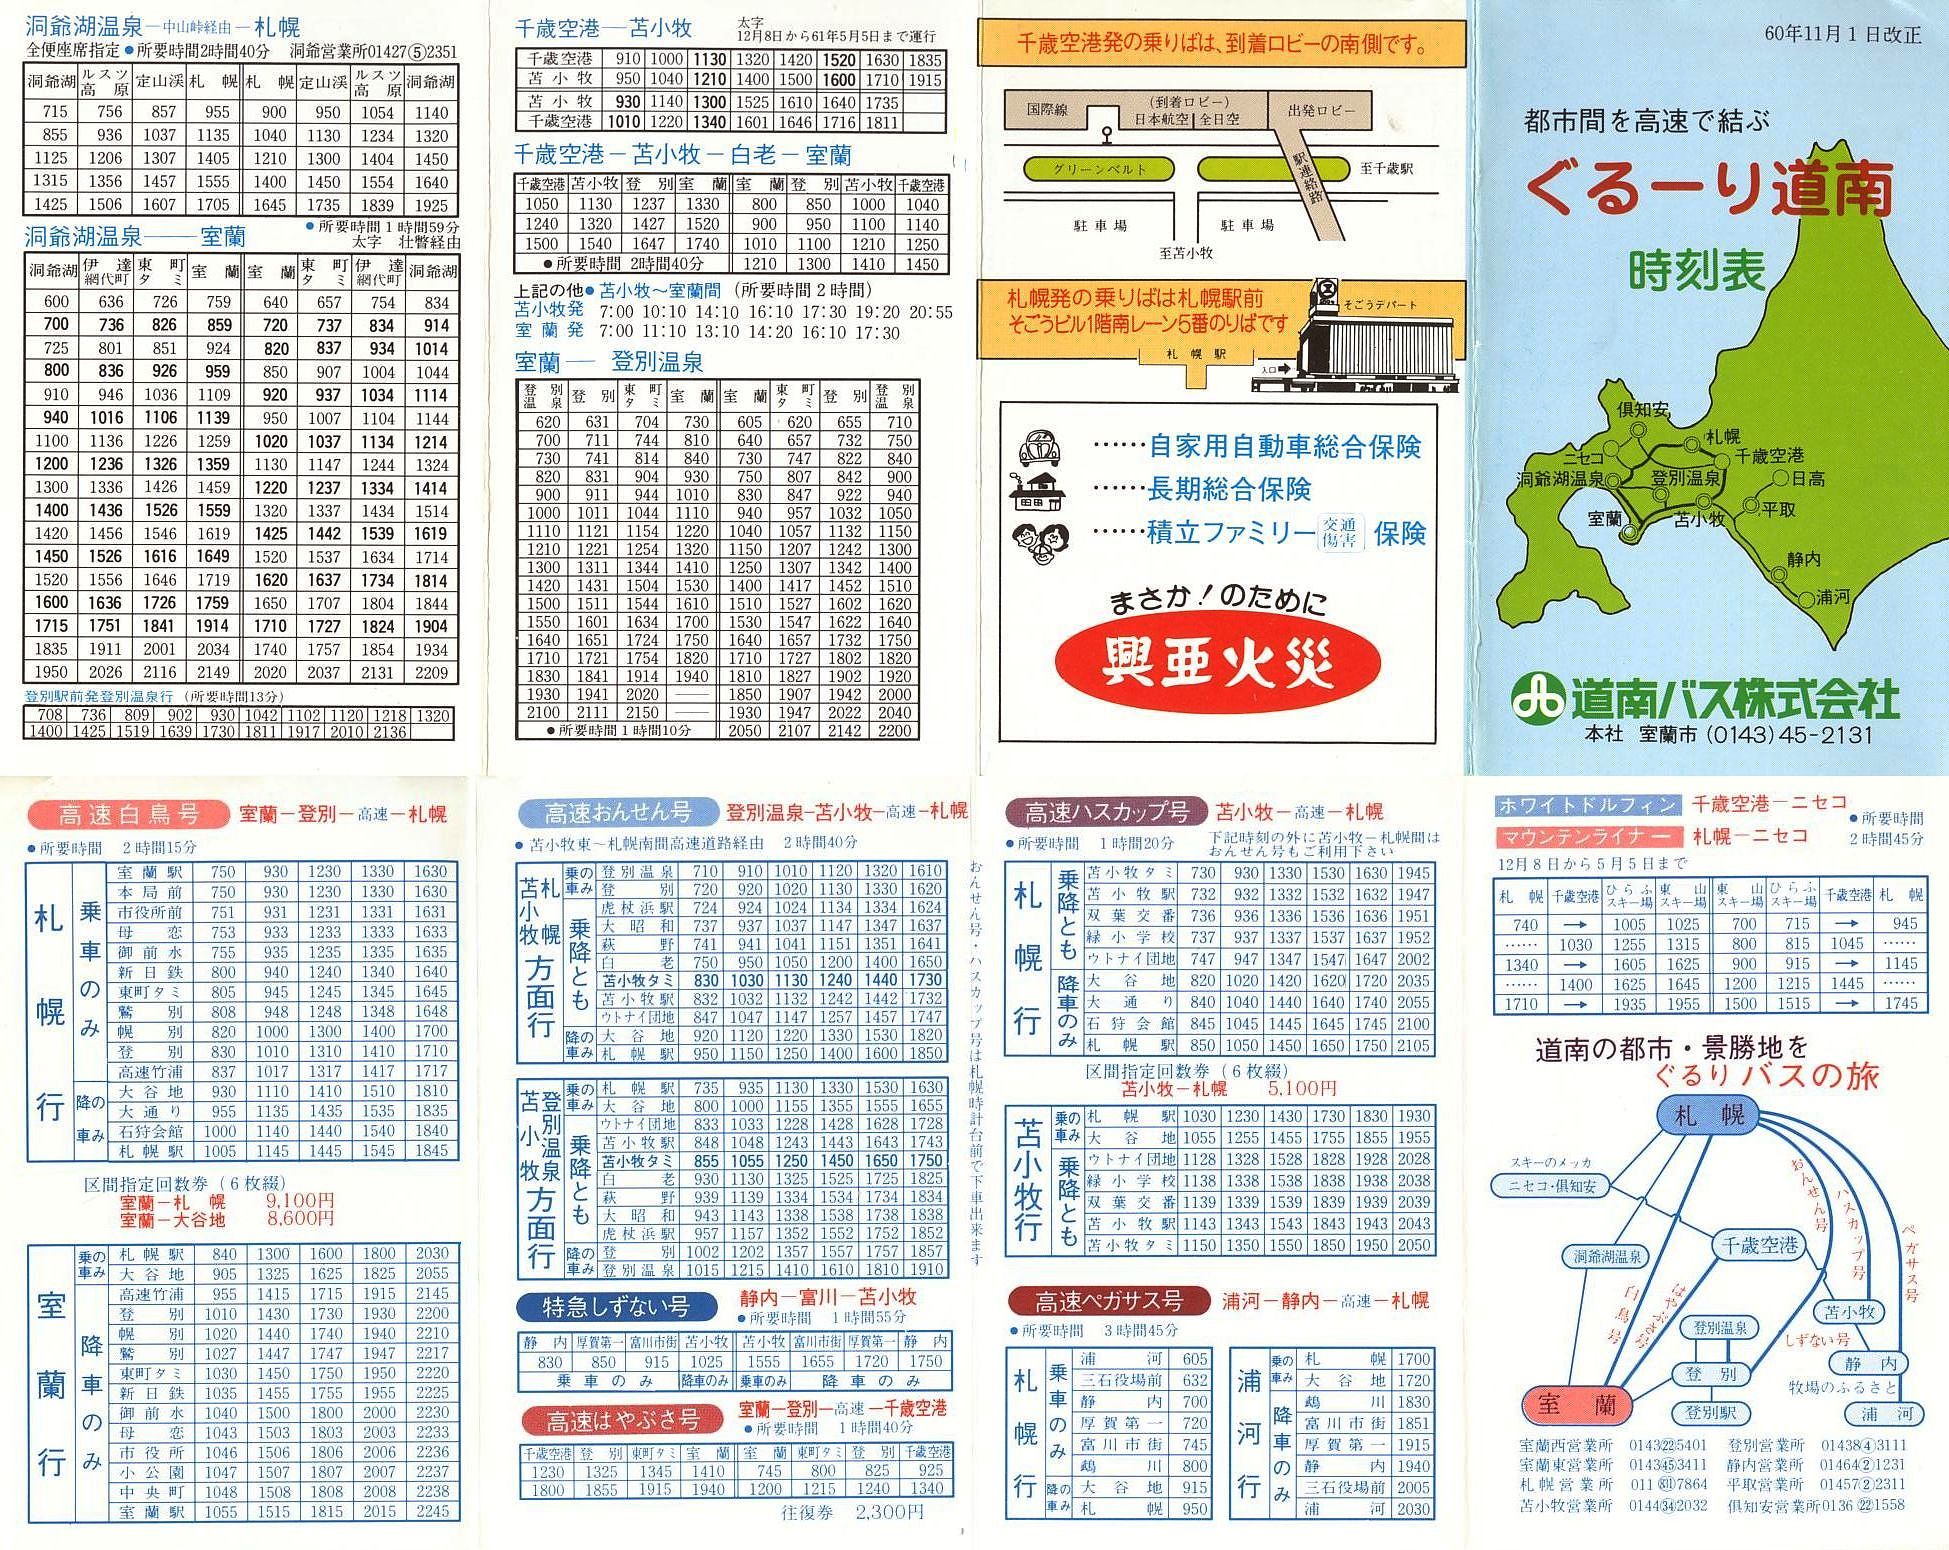 1985-11-01改正_道南バス_ぐるーり道南時刻表